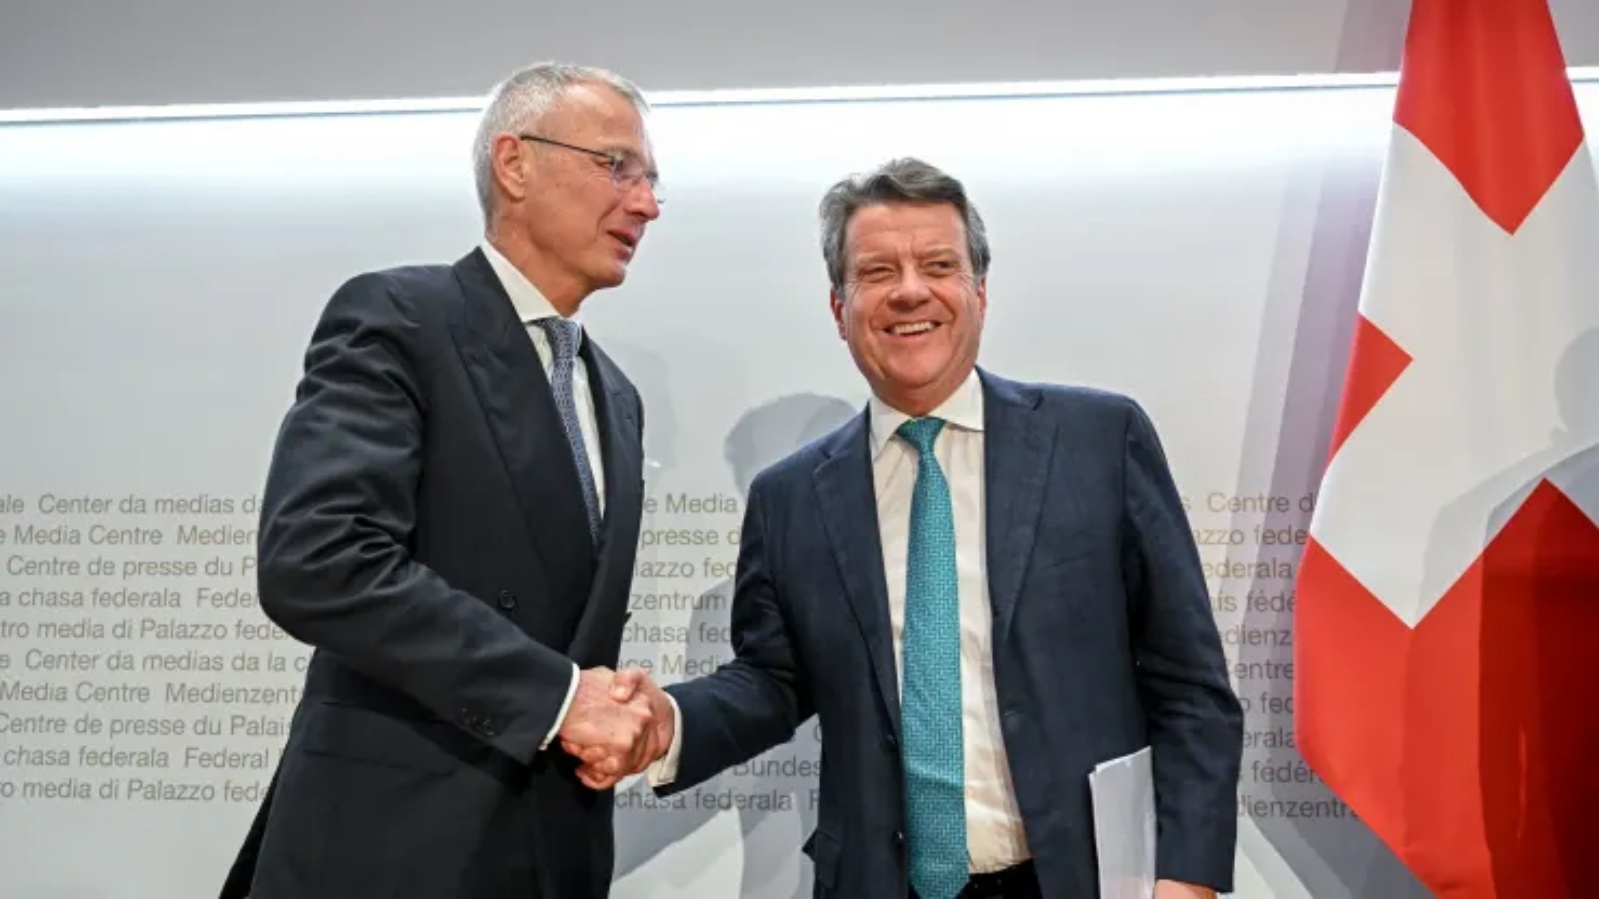 رئيس UBS كولم كيليهر (يمين) يصافح رئيس بنك كريدي سويس أكسل ليمان (يسار) بعد مؤتمر صحفي عقب محادثات حول Credit Suisse في برن في 19 مارس 2023.